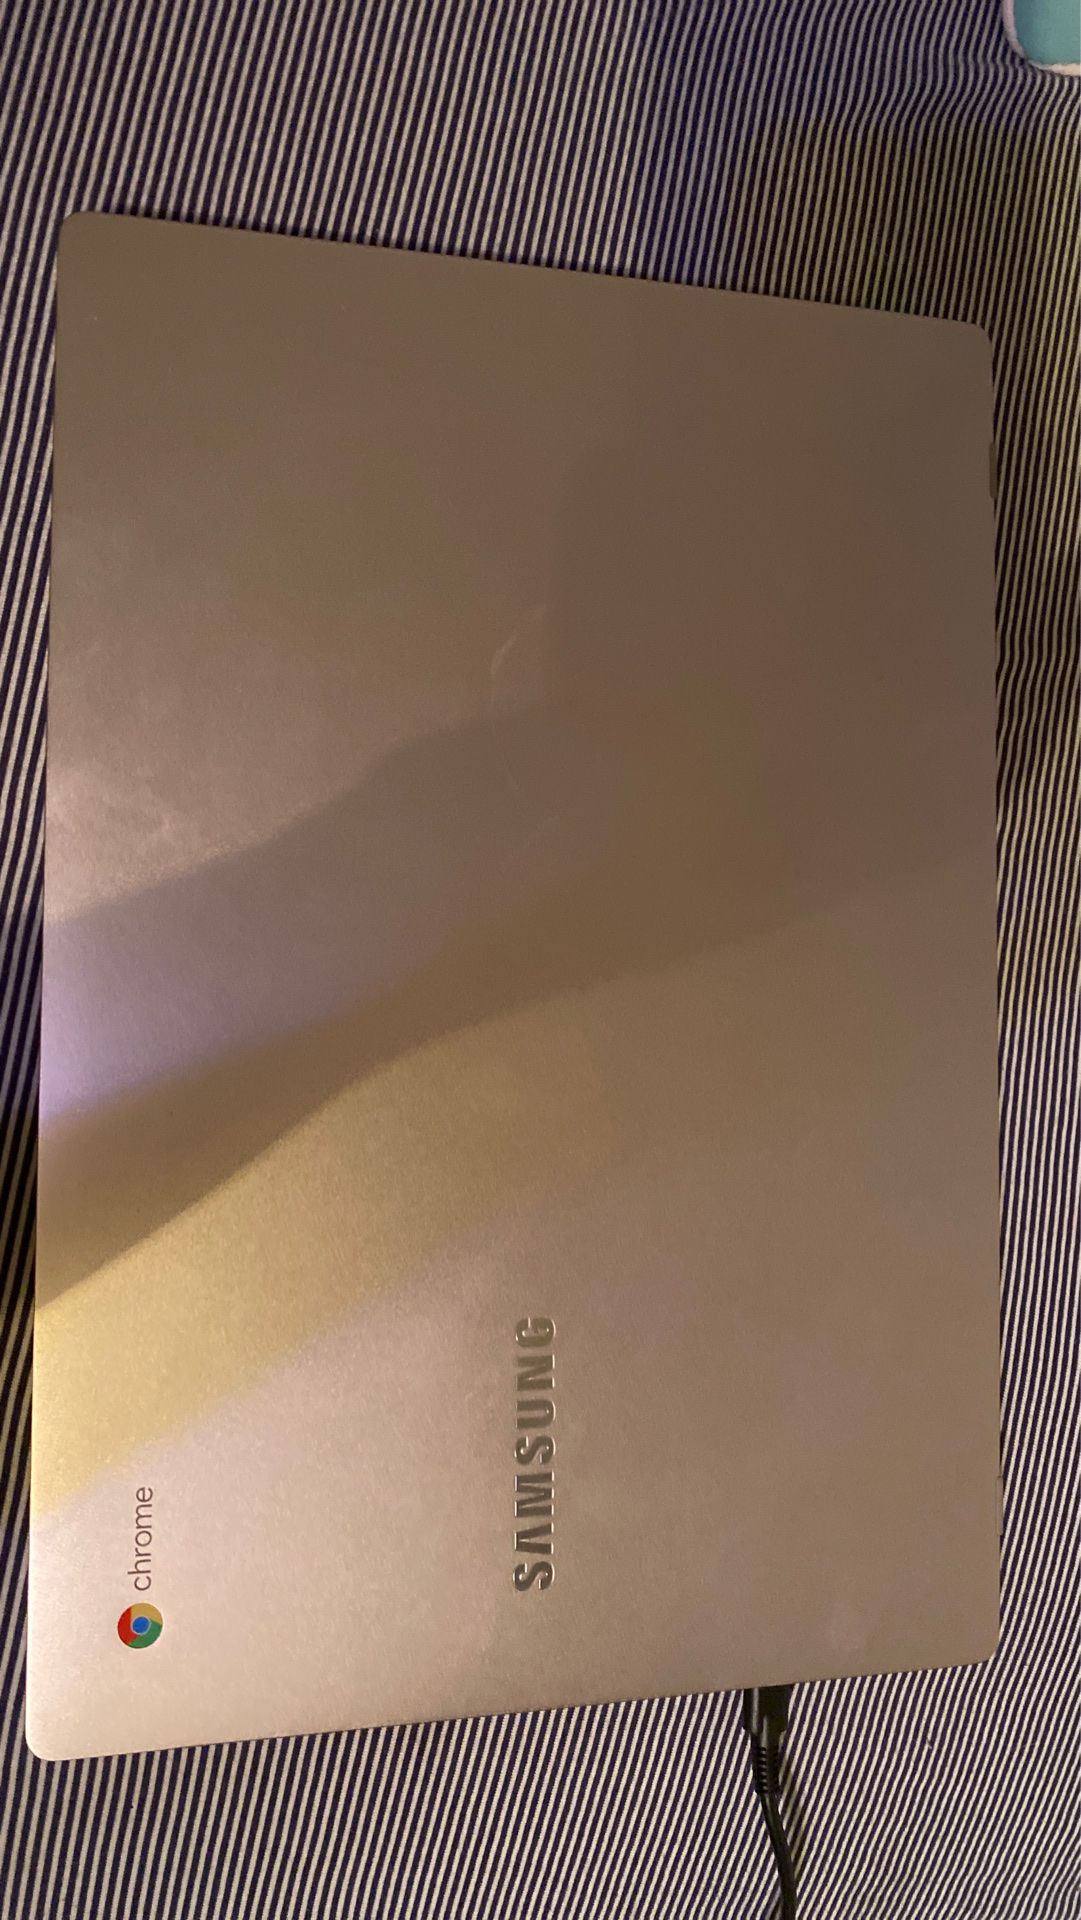 Chromebook by Samsung